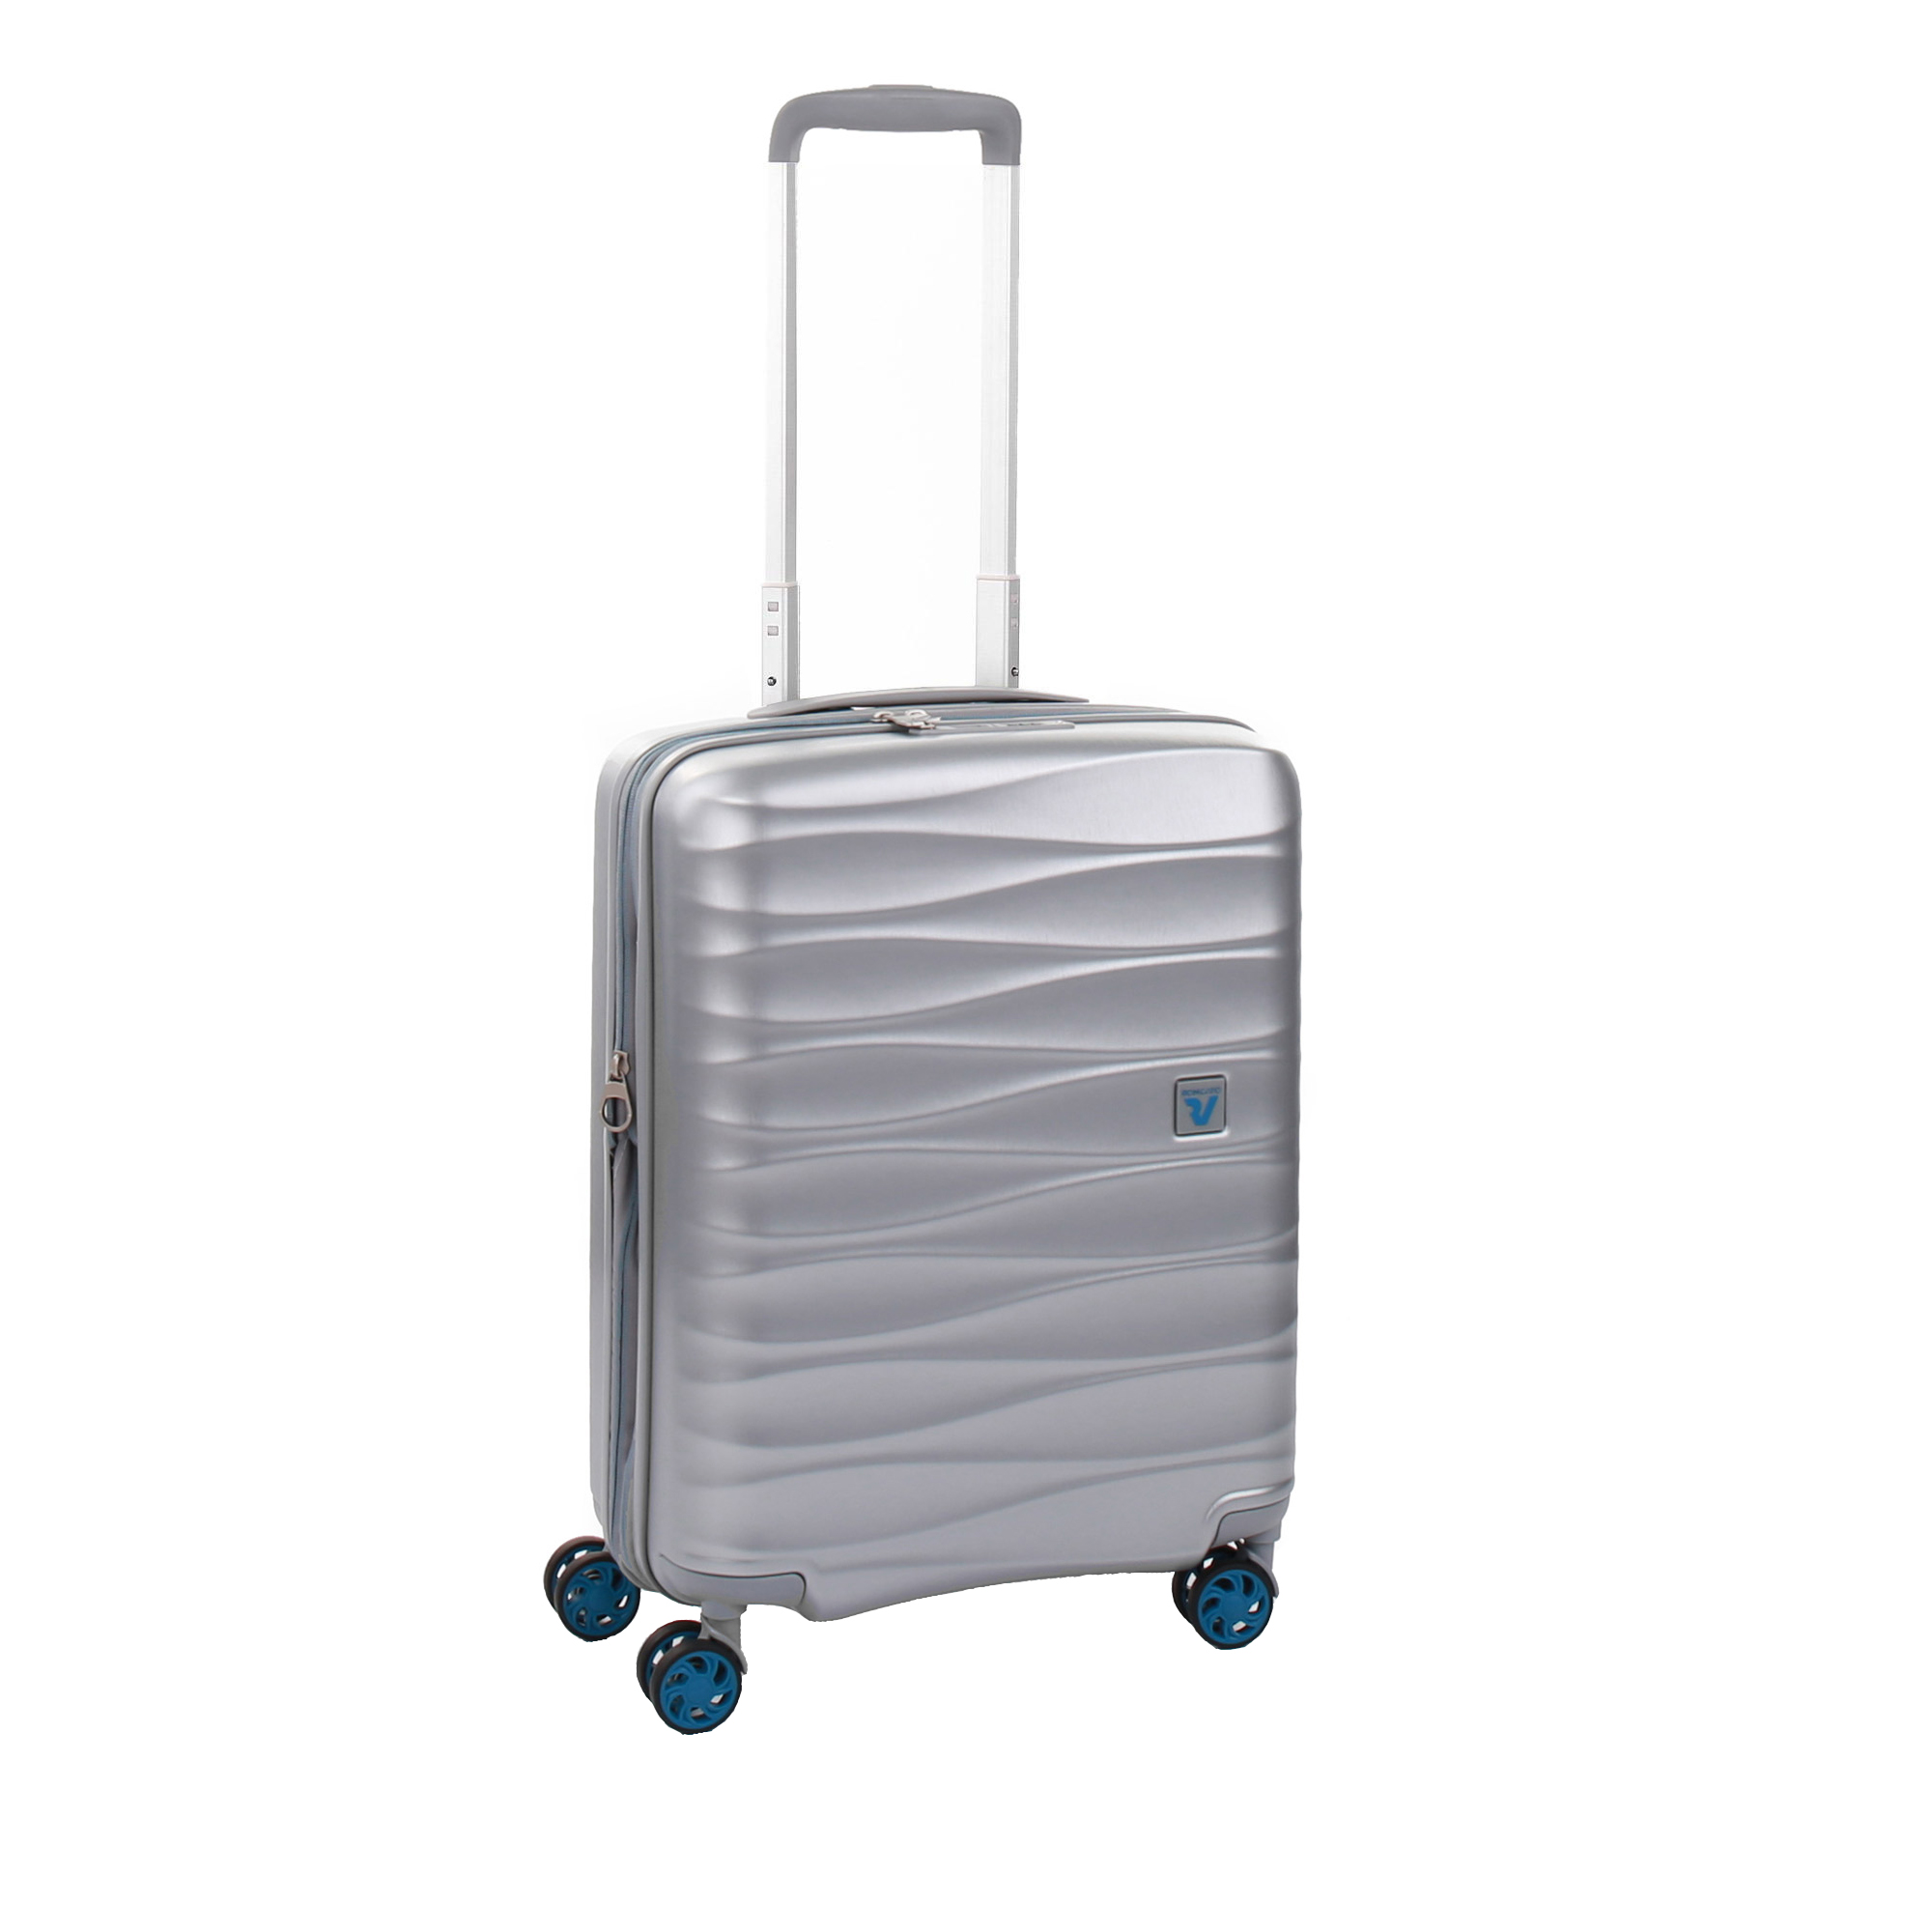 نکته خرید - قیمت روز چمدان رونکاتو مدل STELLAR NEW کد 414713 سایز کوچک خرید